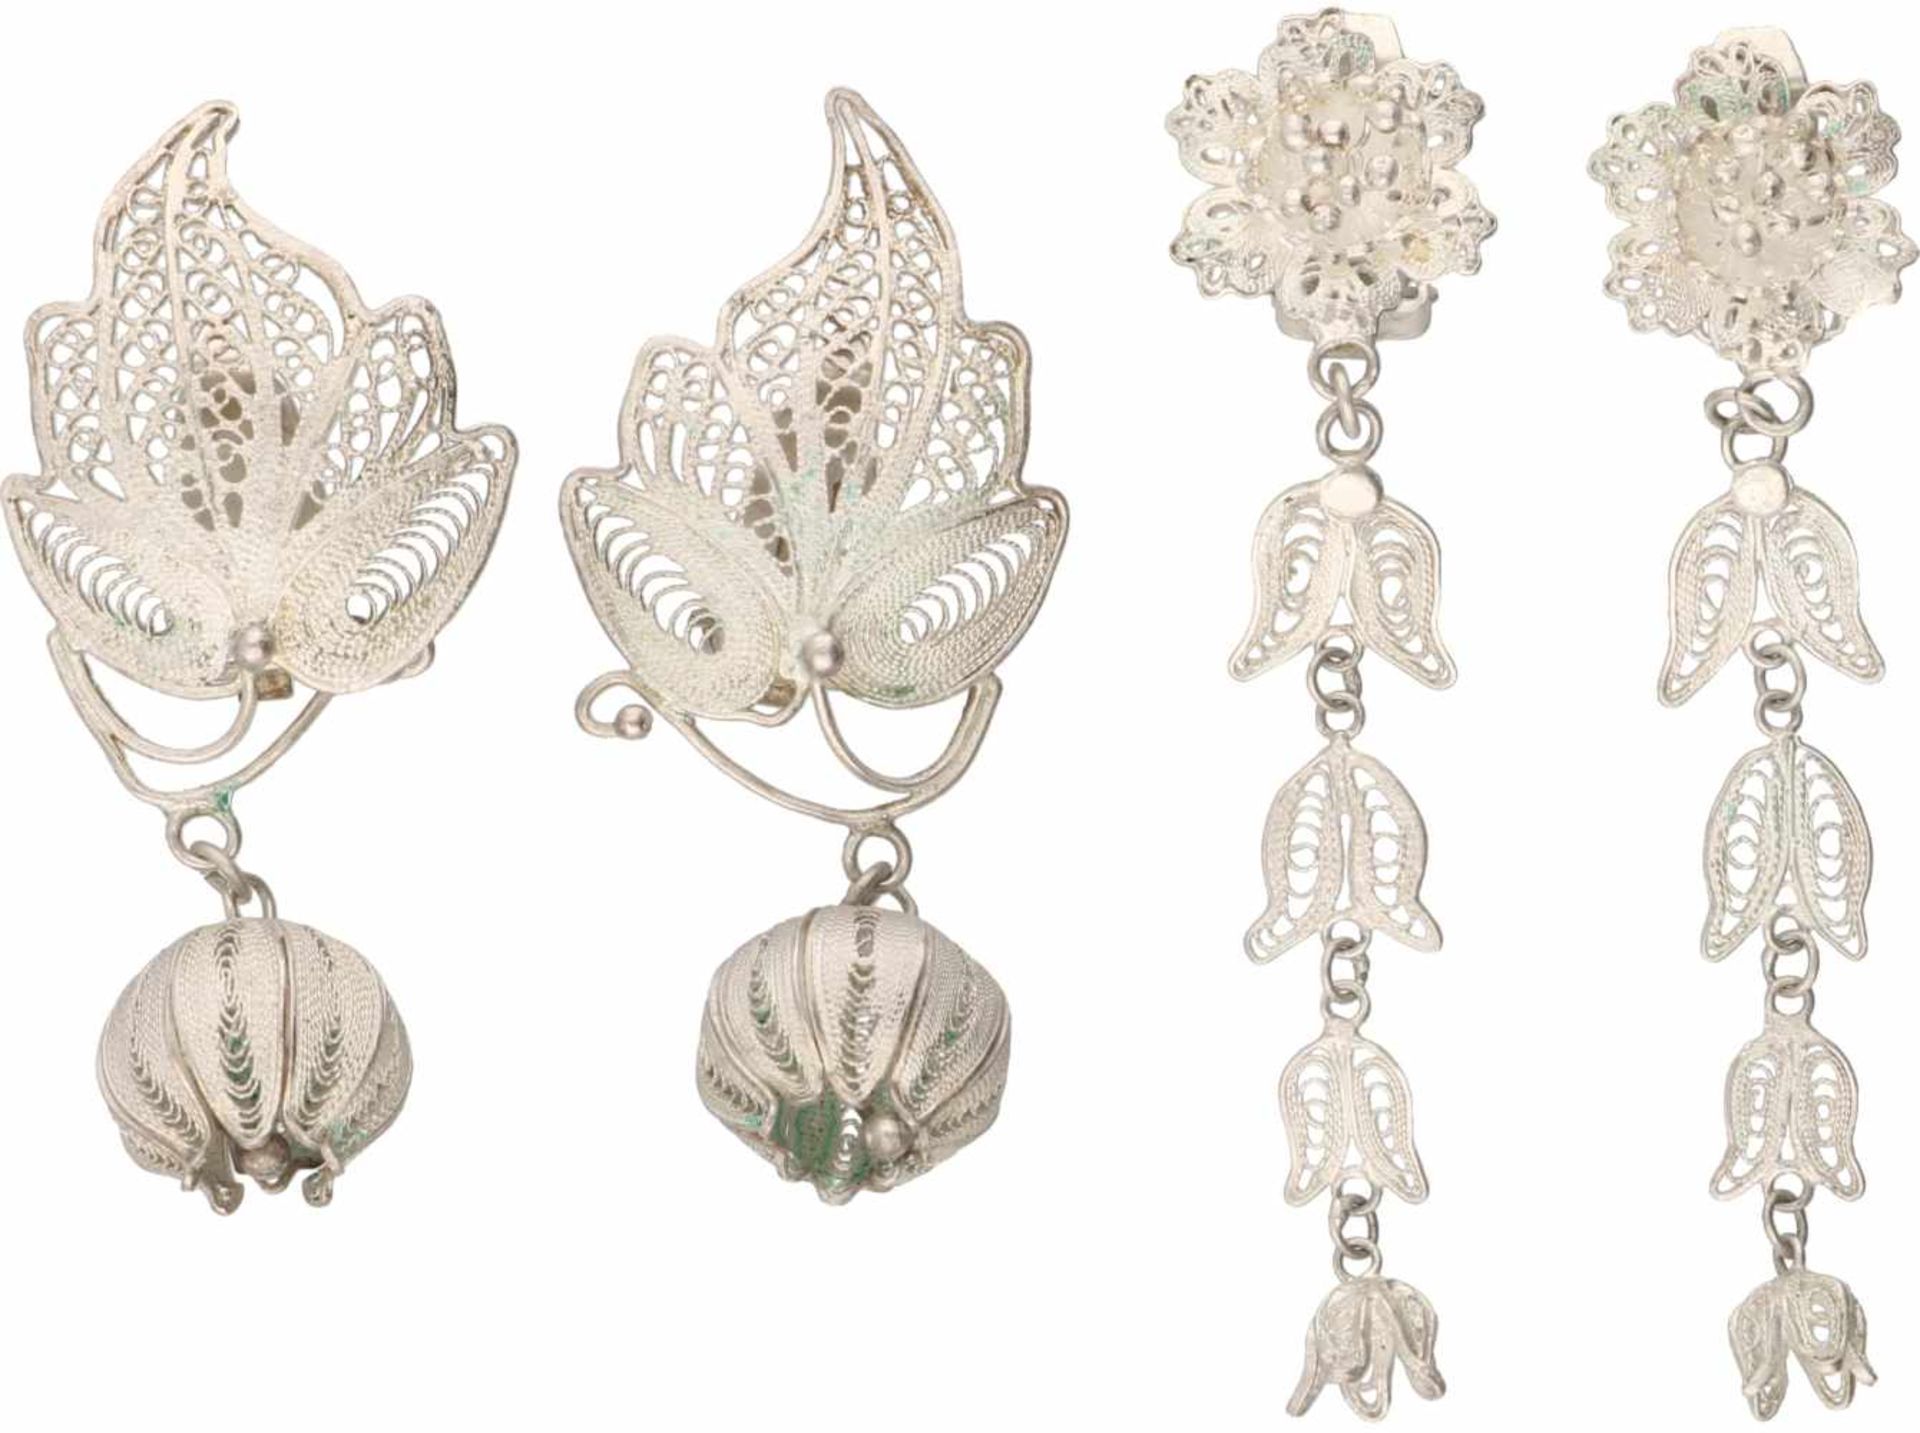 Lot of filigree earrings silver - 925/1000.